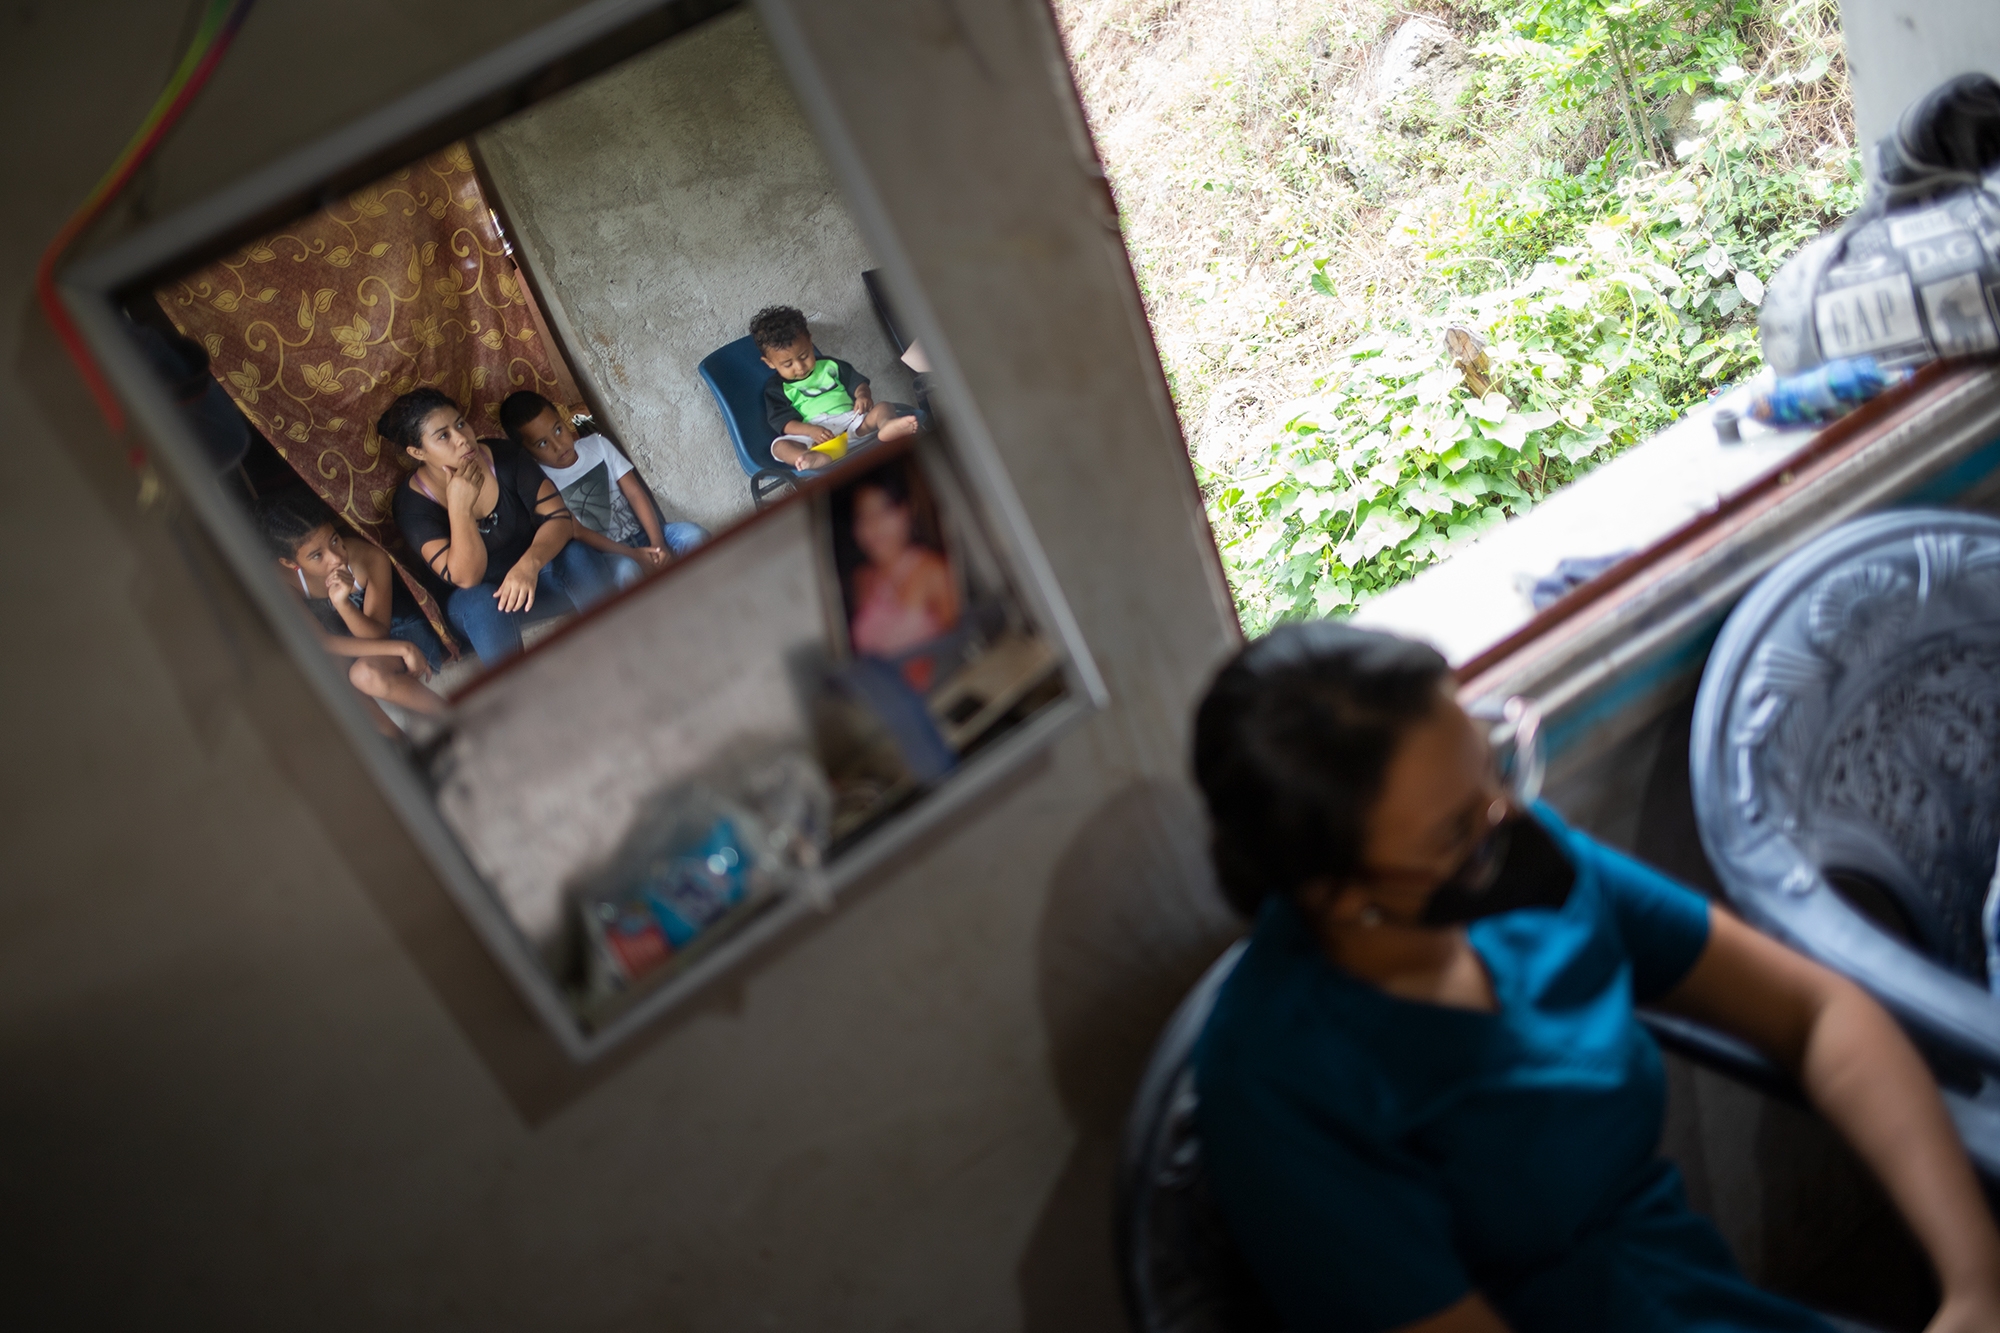 Optio.org acompañamiento legal y psicológico | mortalidad infantil | significado | materna | en Honduras | en Honduras 2020 | 2021 | "mortalidad materna en honduras" | mortalidad infantil |